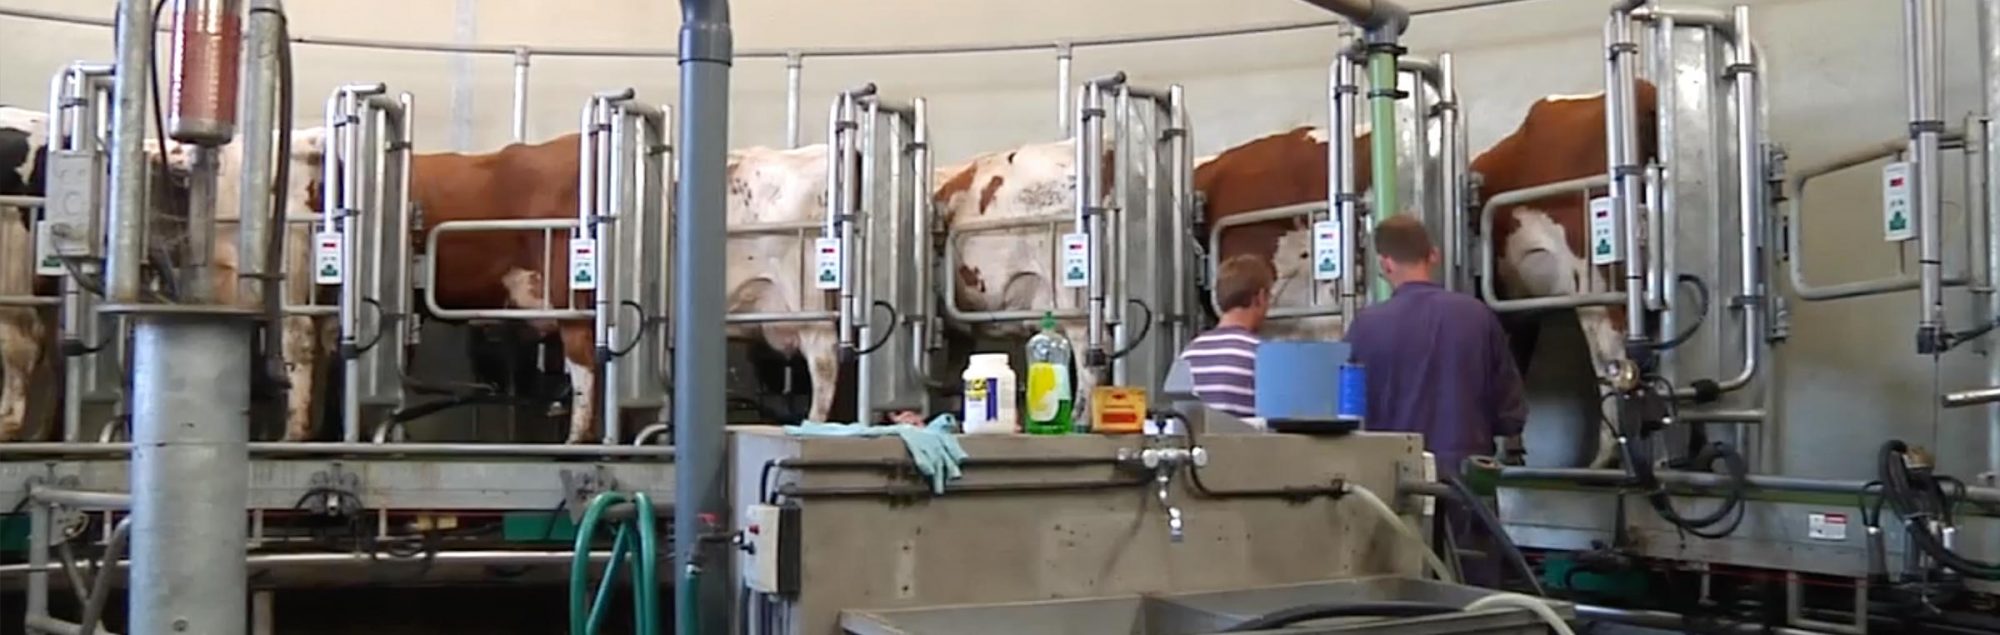 Koeien in een melkmachine